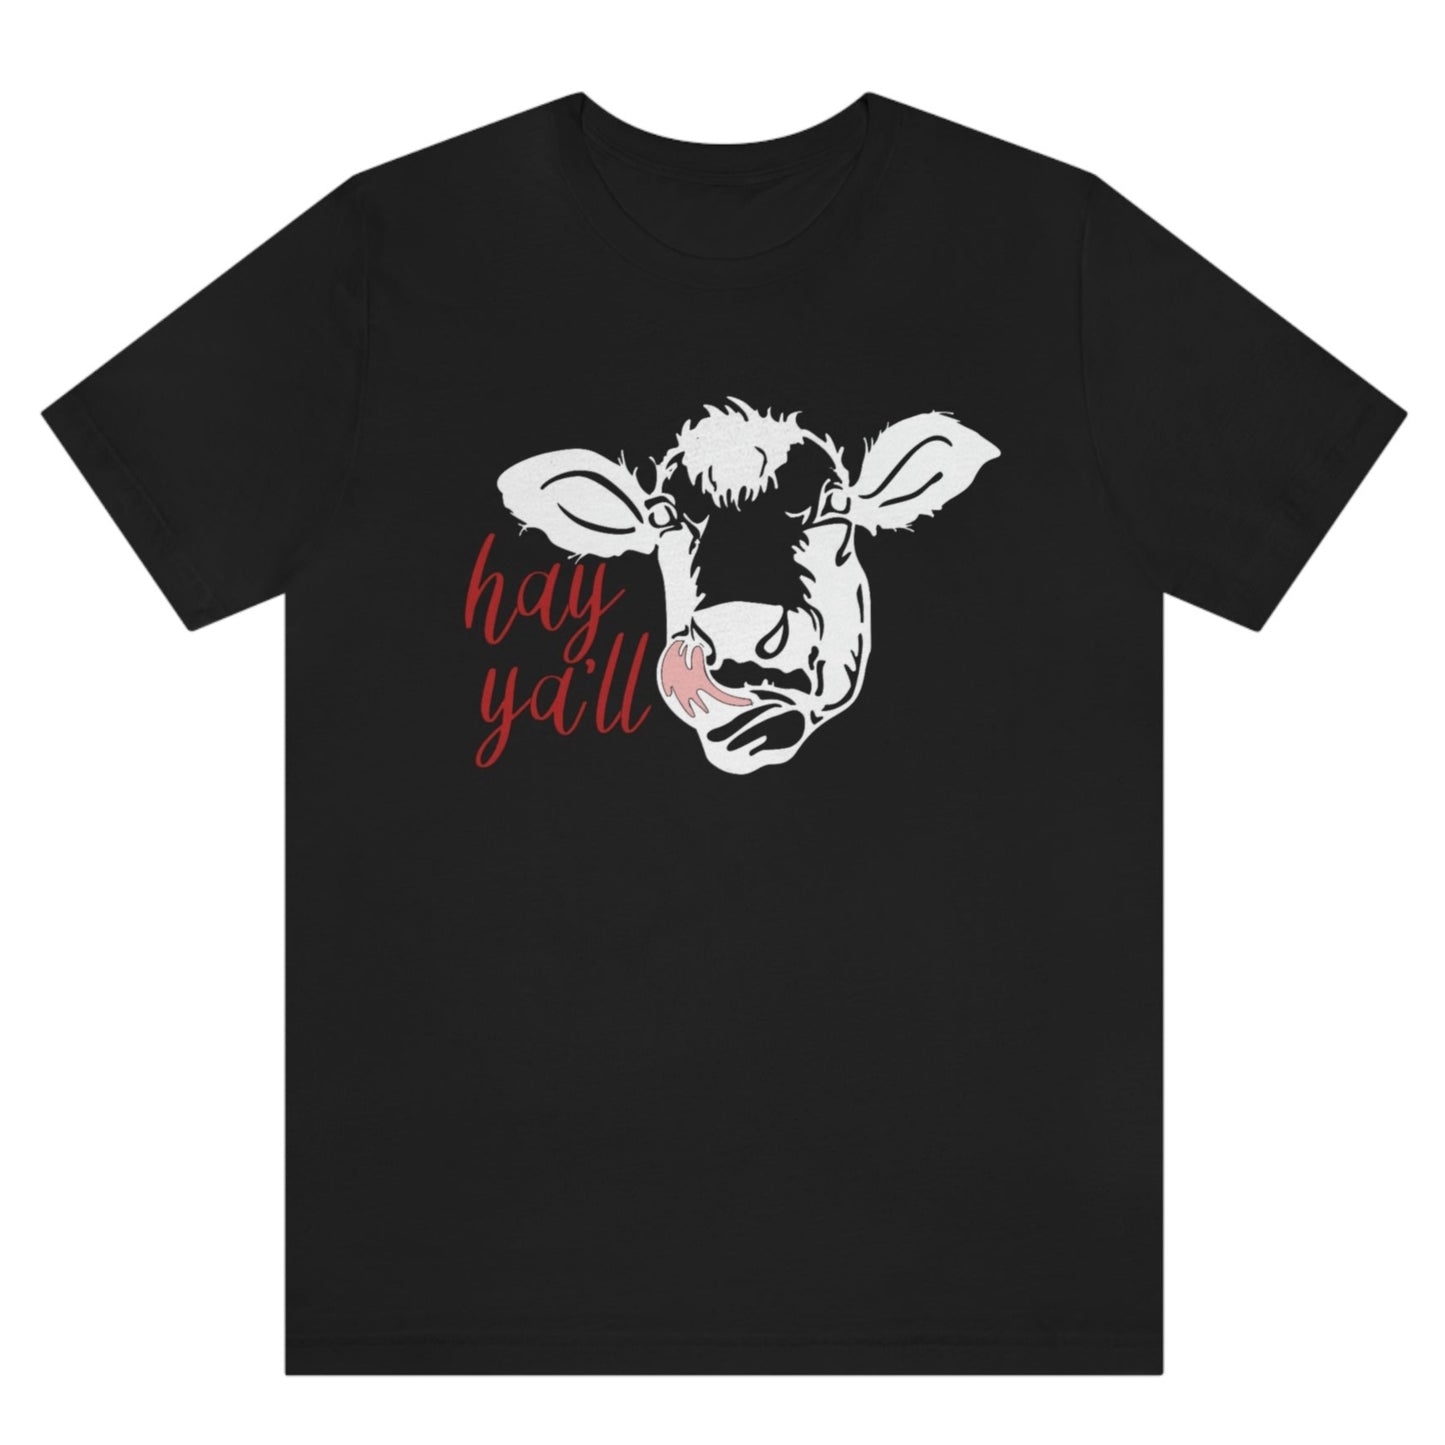 hey-yall-black-t-shirt